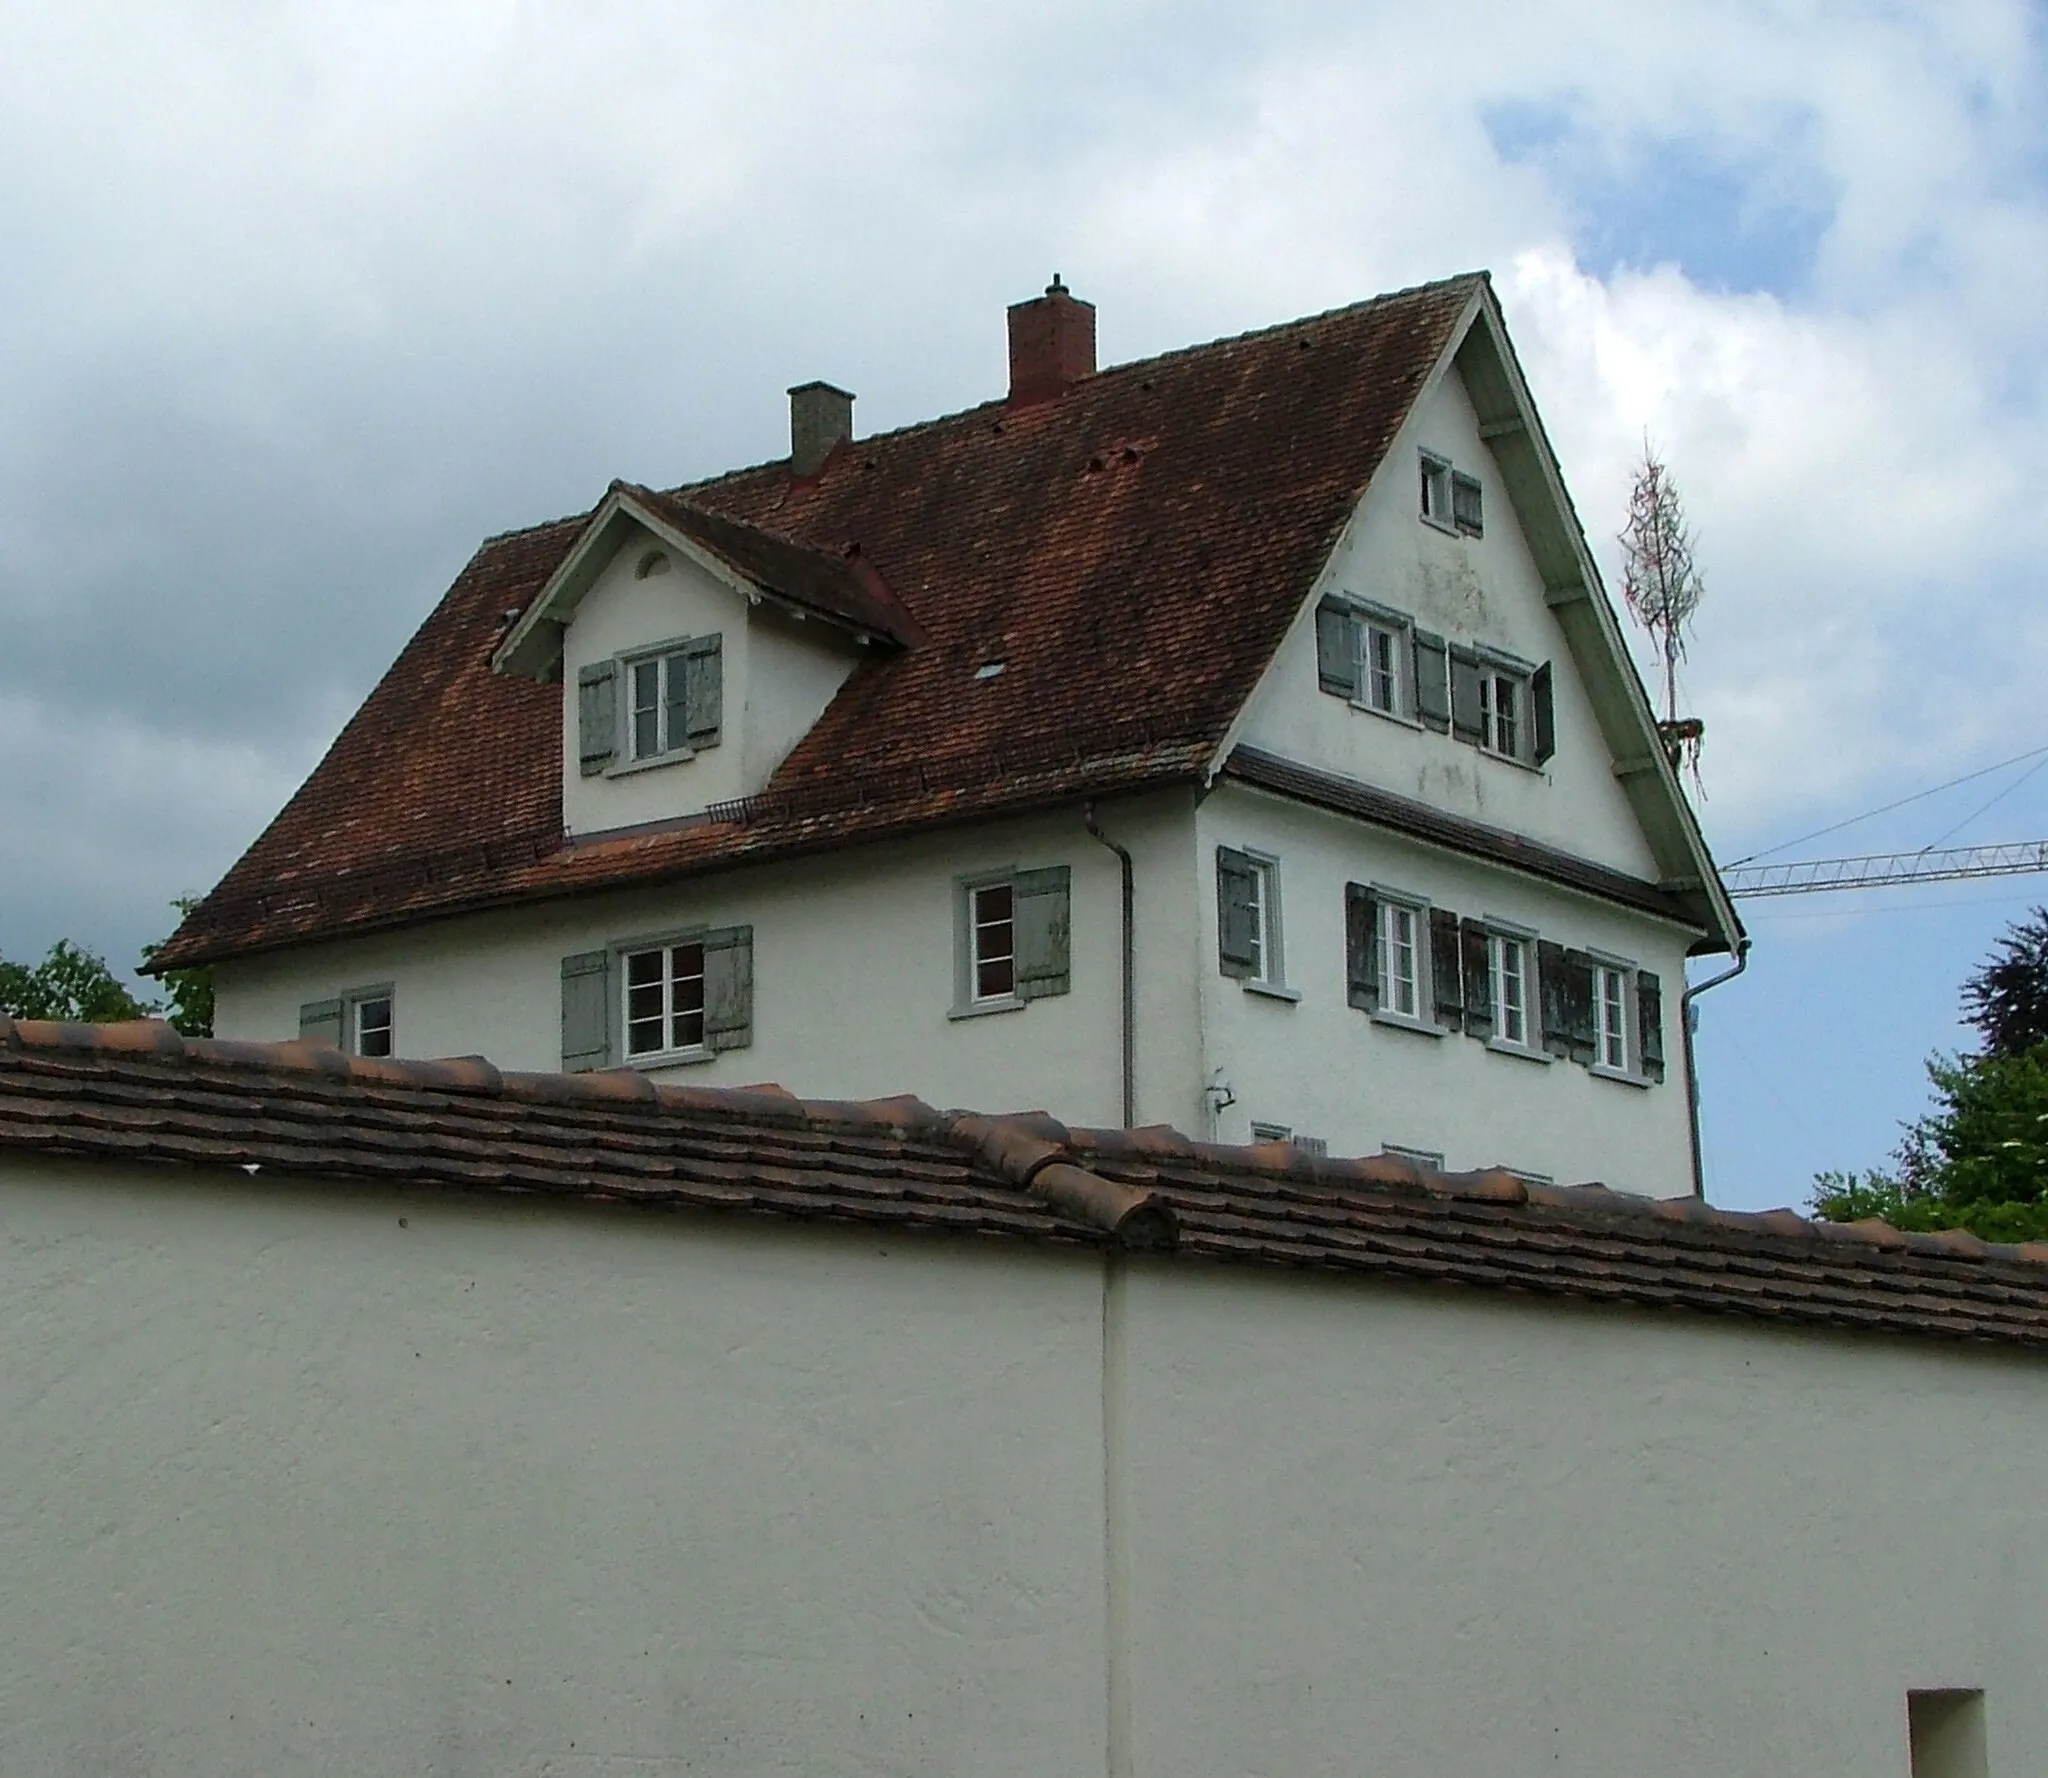 Billede af Tübingen